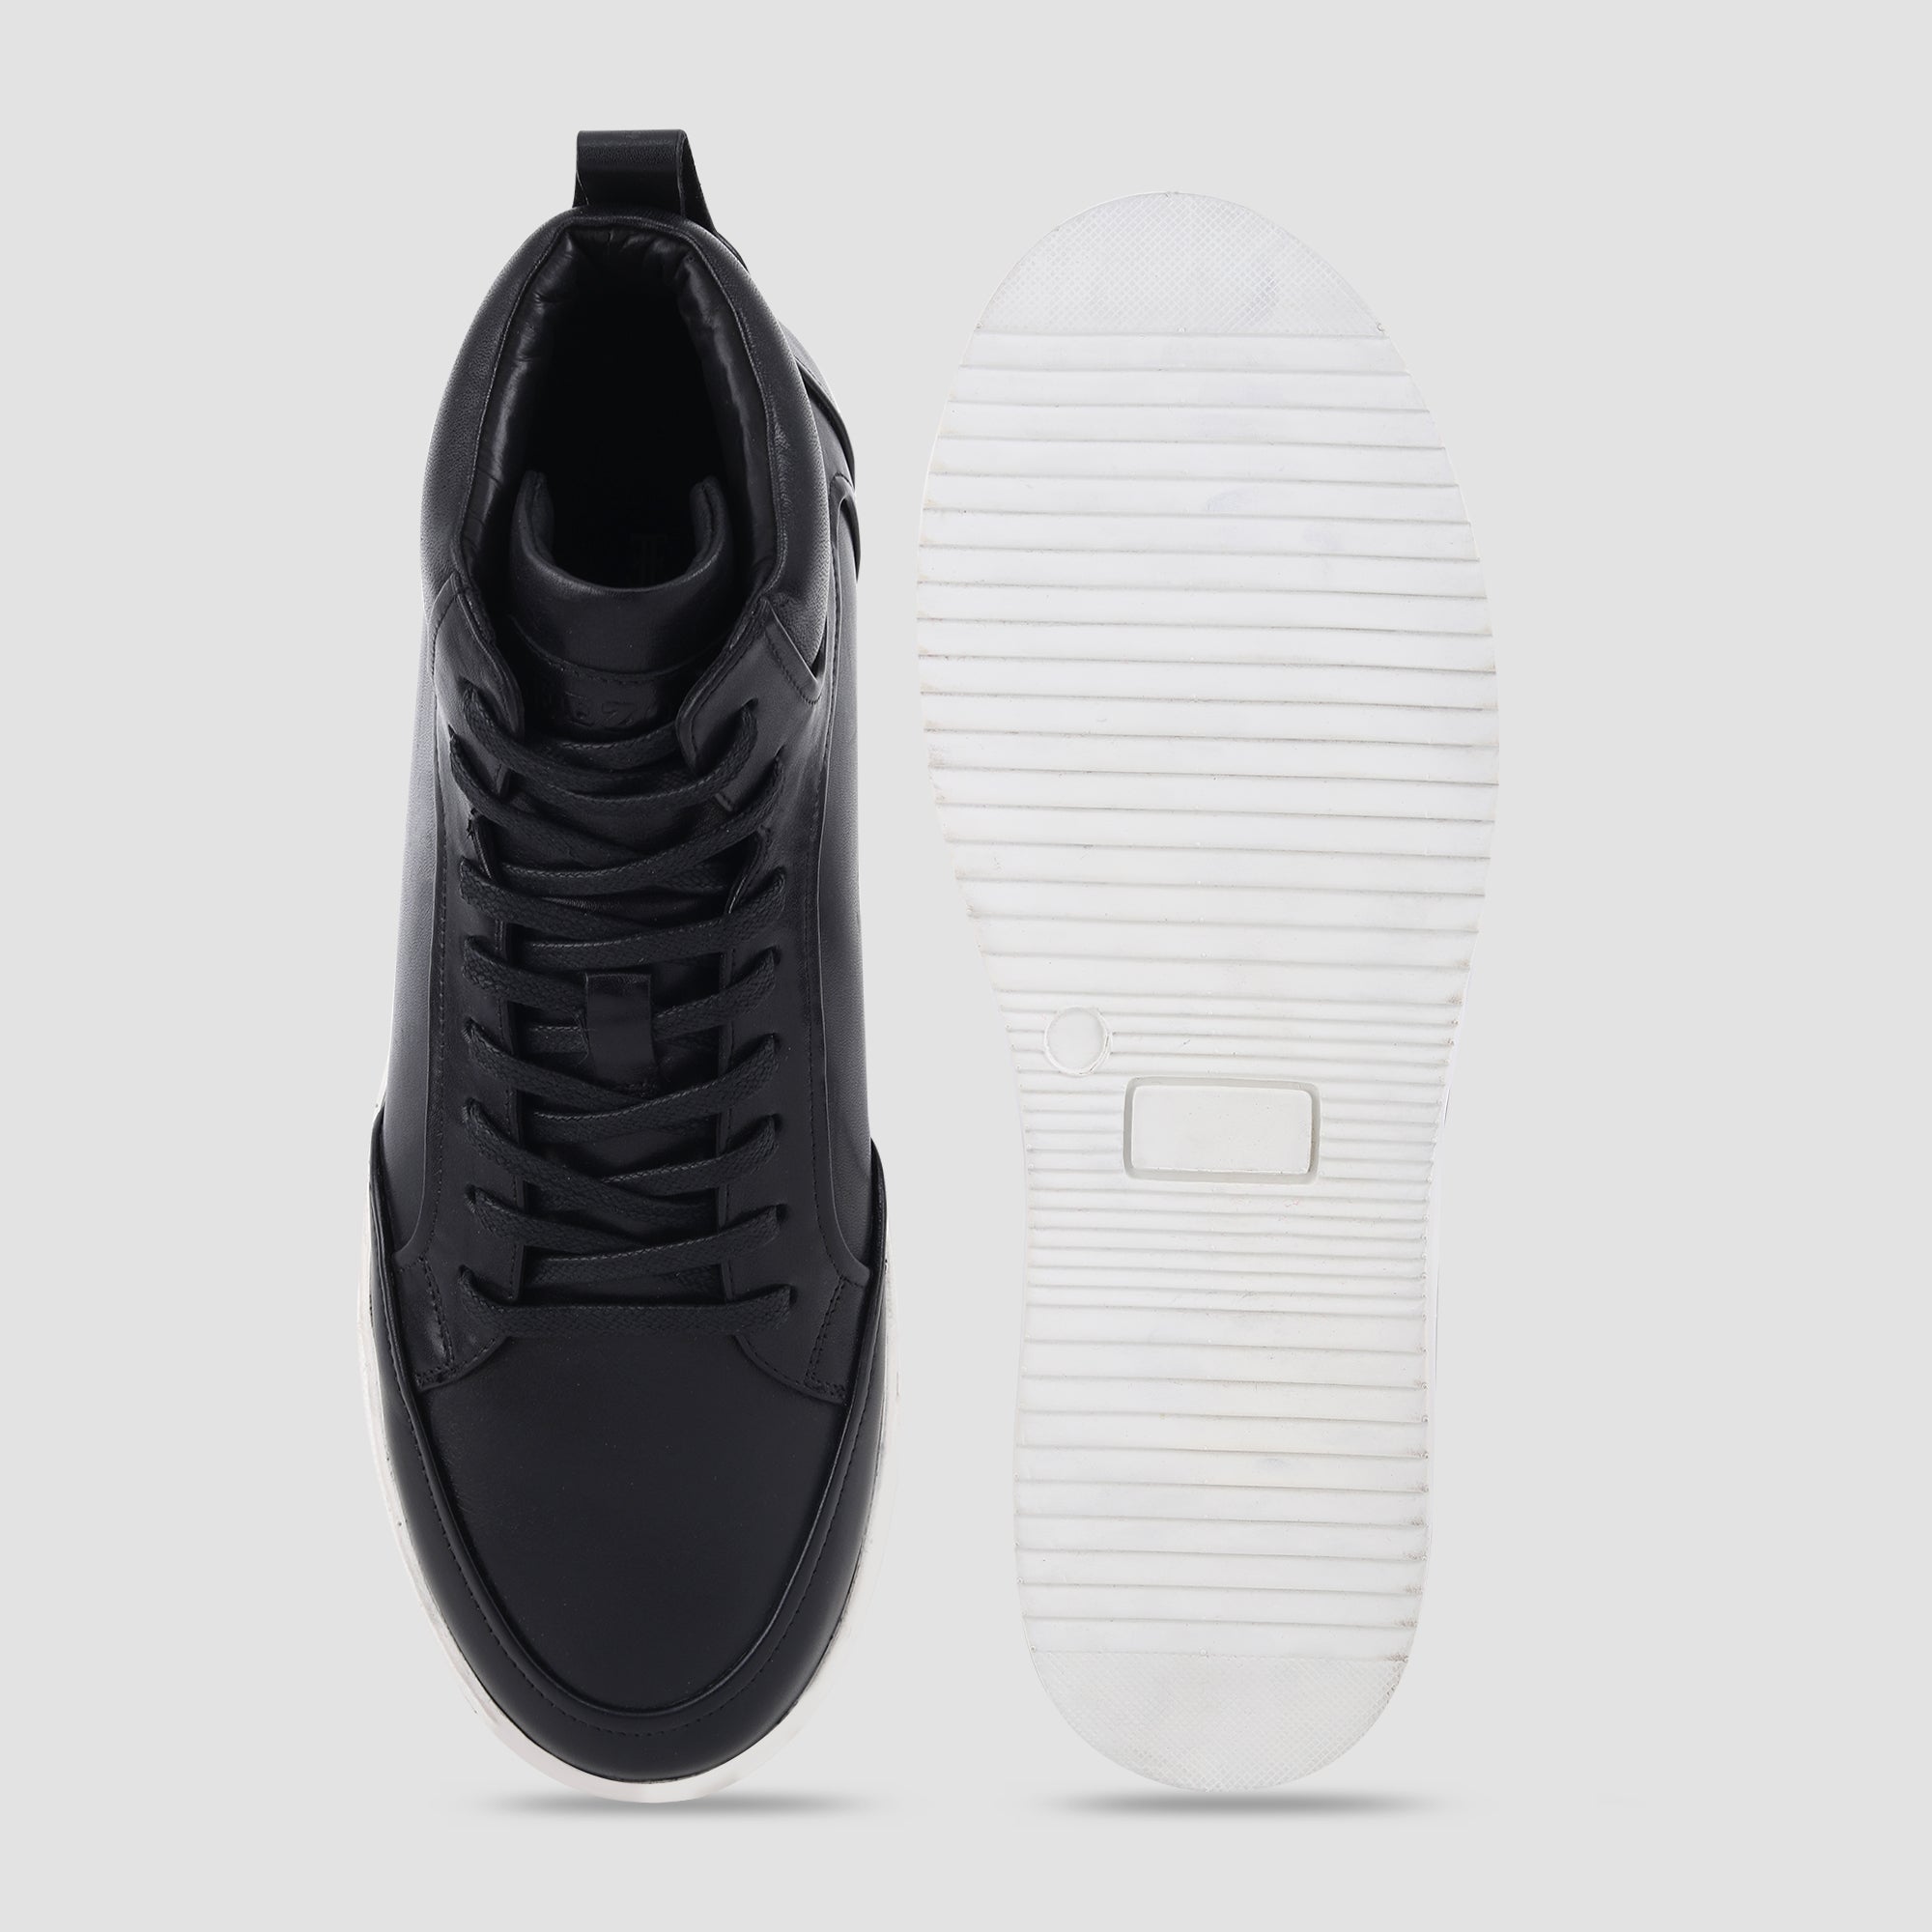 Ezok Black Leather Sneaker For Men